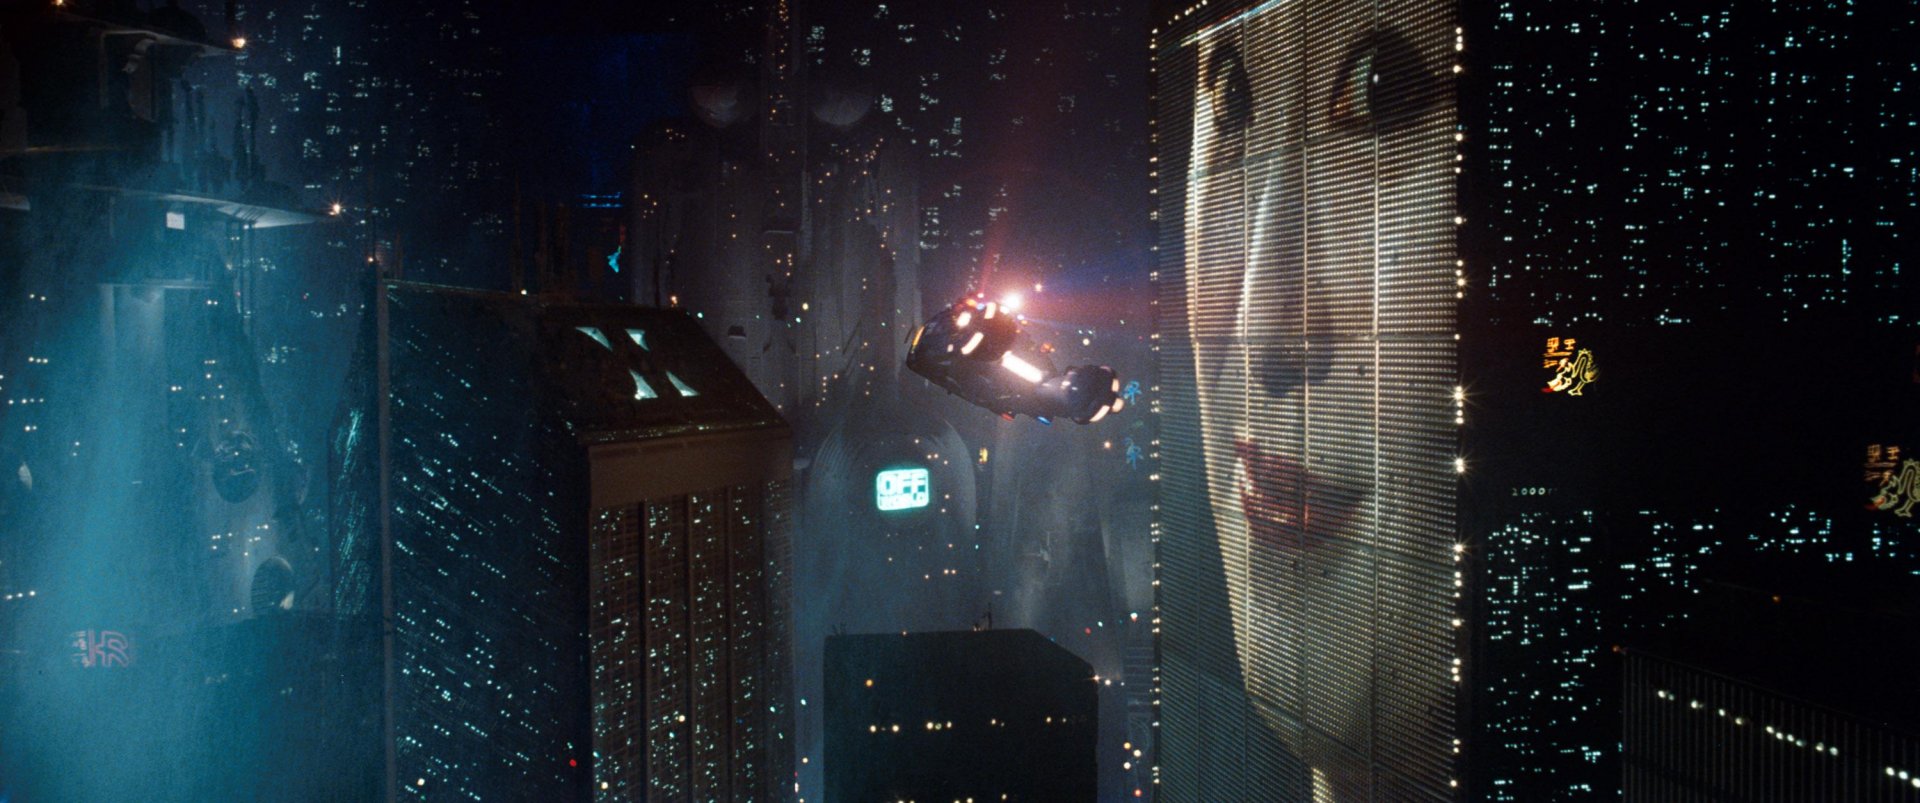 HD wallpaper Blade Runner Blade Runner 2049 science fiction retro  science fiction  Wallpaper Flare